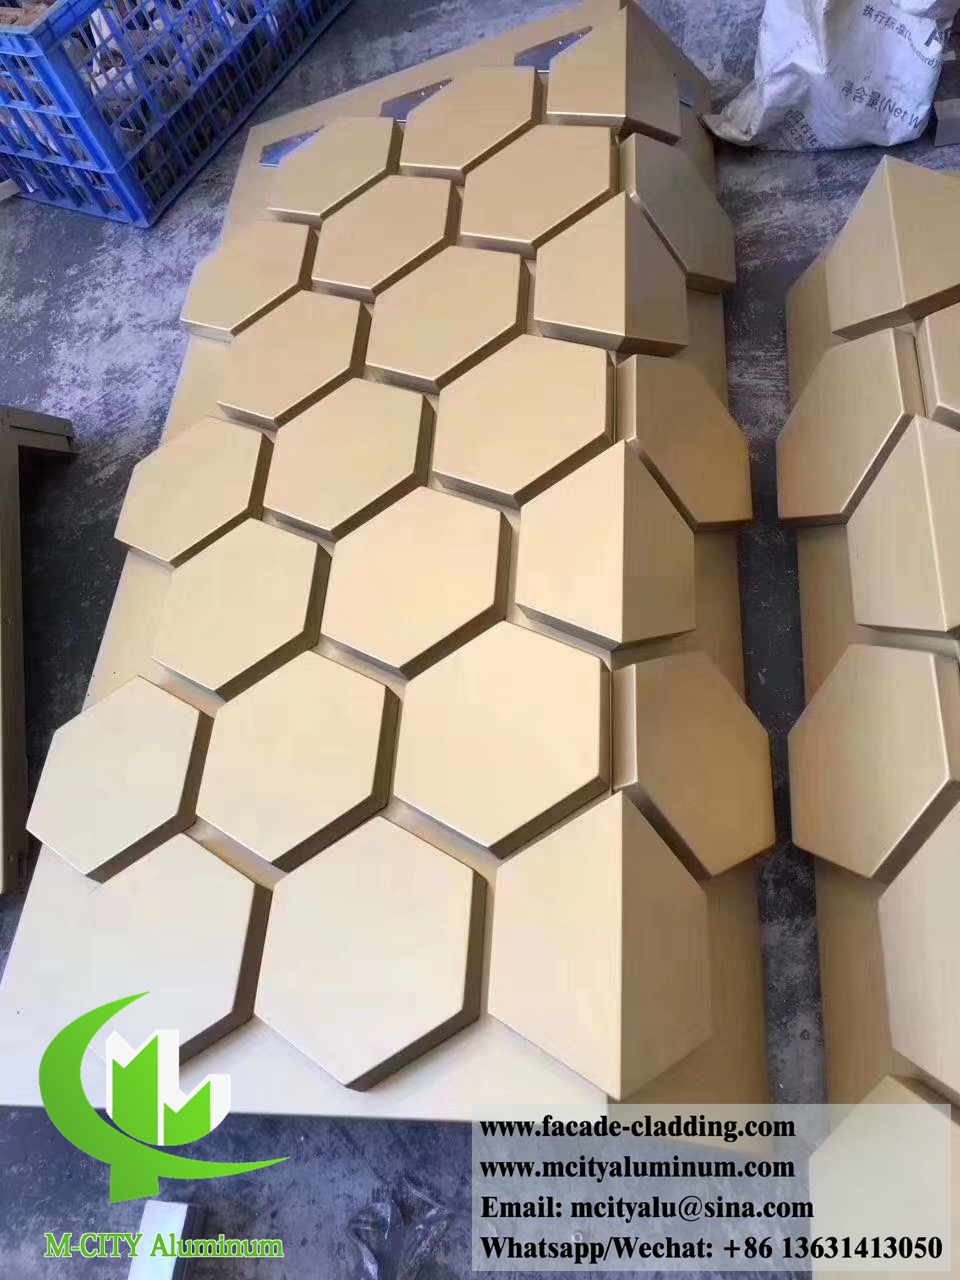 Metal cladding aluminium facades panel hexagon panels for exterior wall cladding